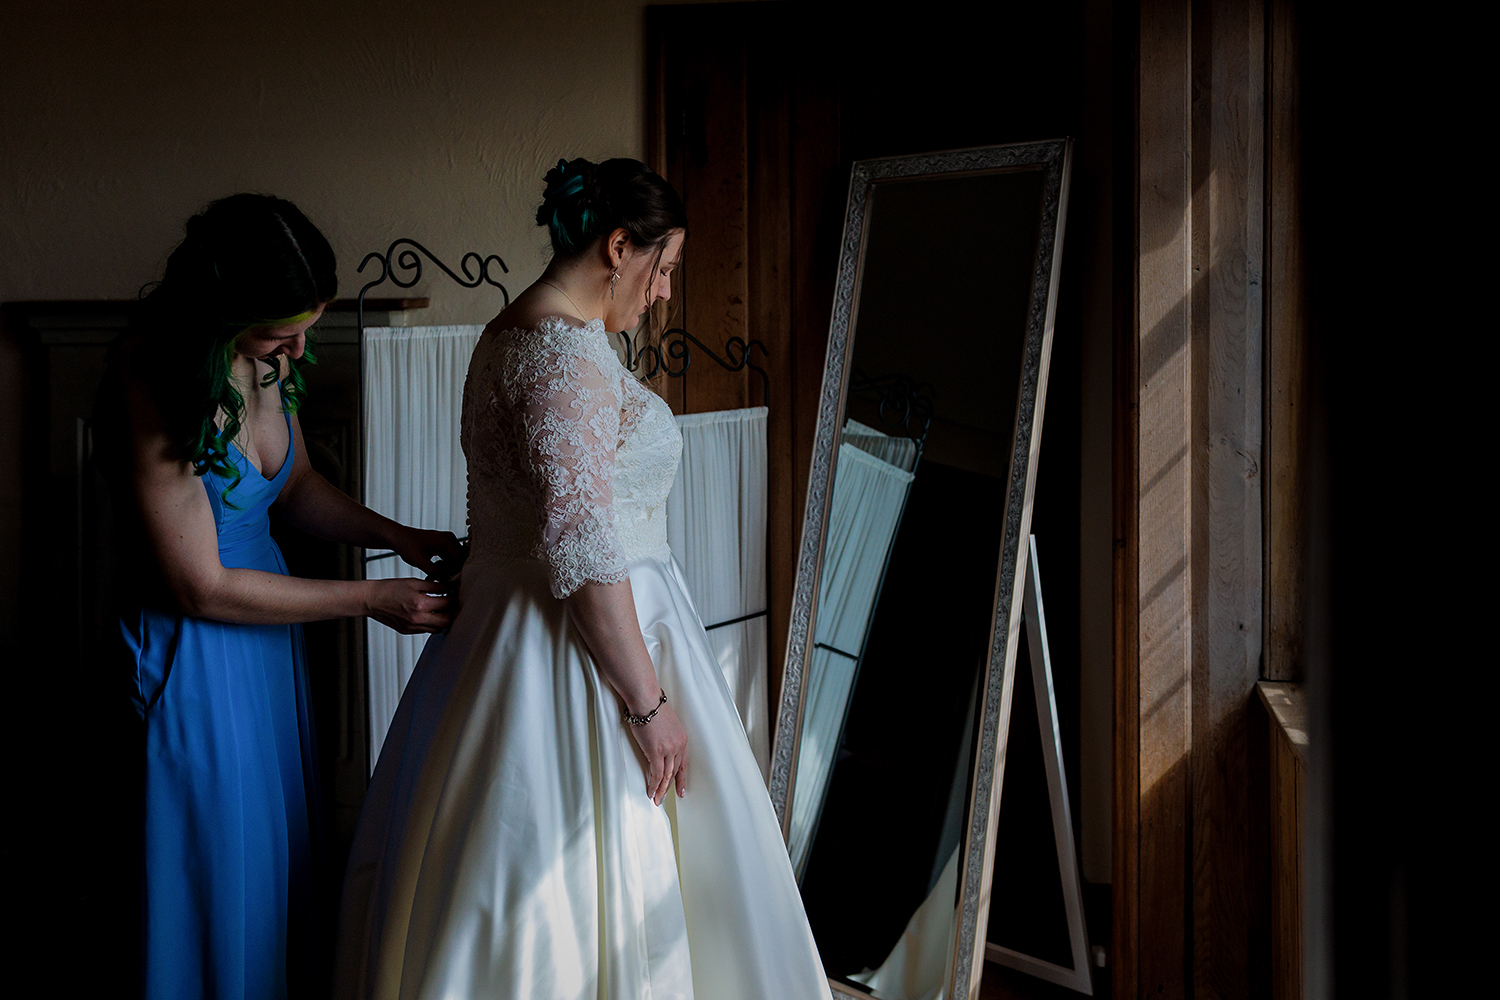 Bridal prep at Lympne Castle -the bridesmaid laces up the brides dress